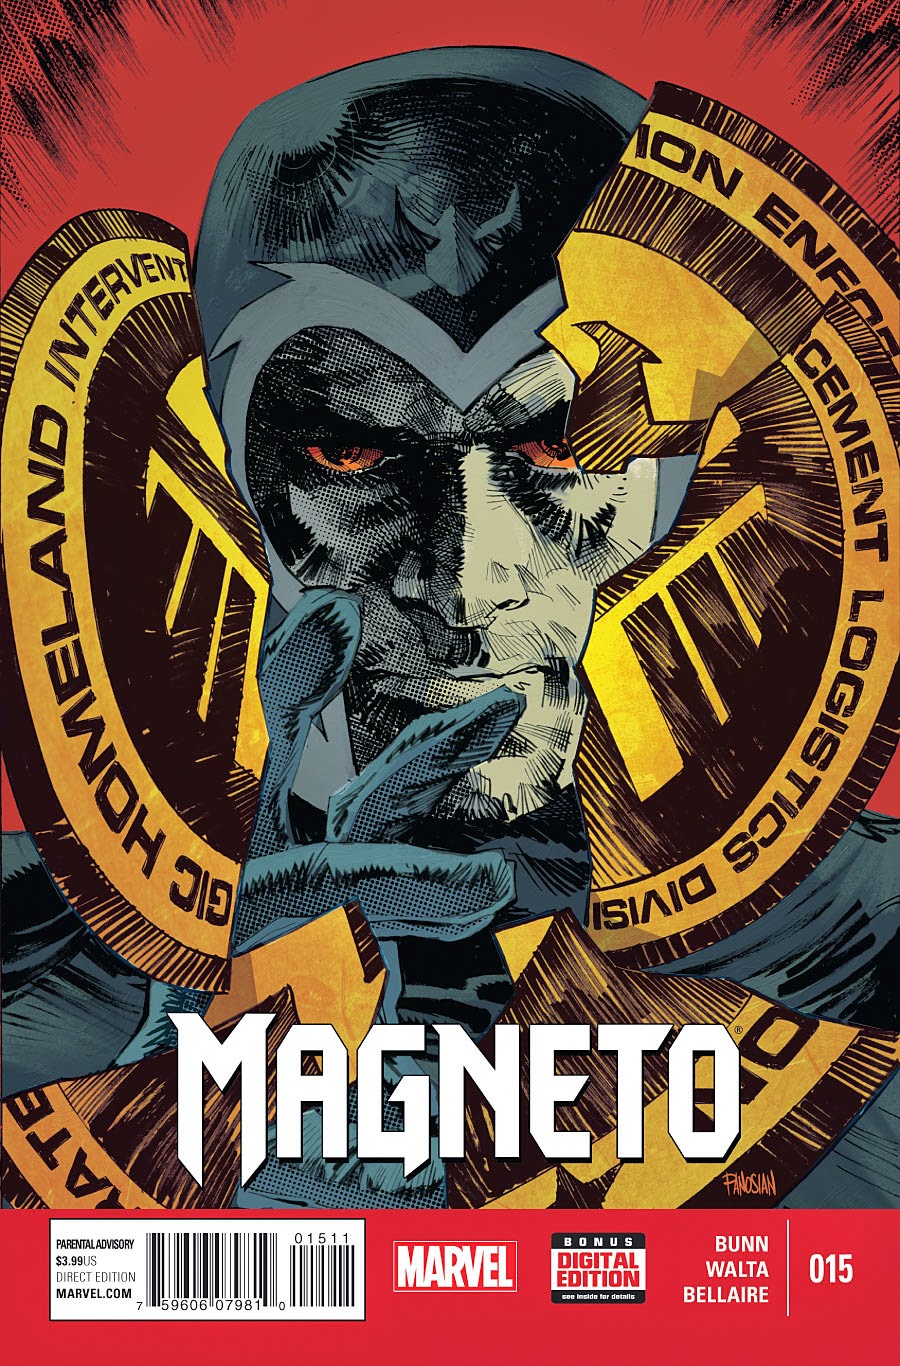 Magneto breaks S.H.I.E.L.D